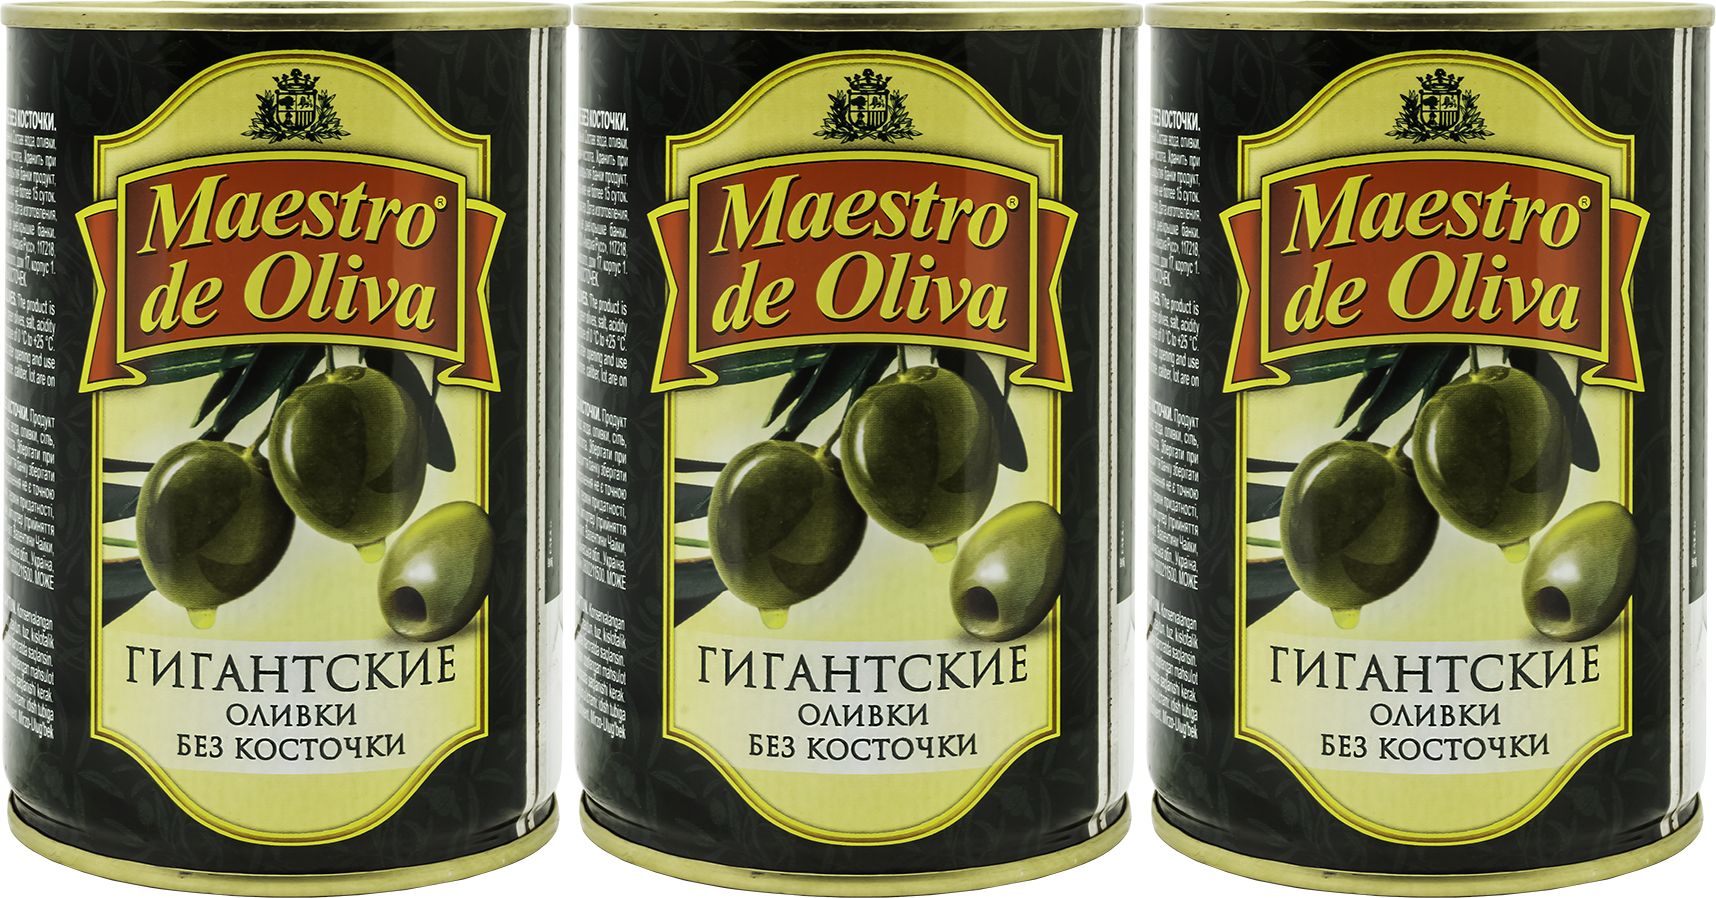 Aceite de oliva caduca se puede consumir